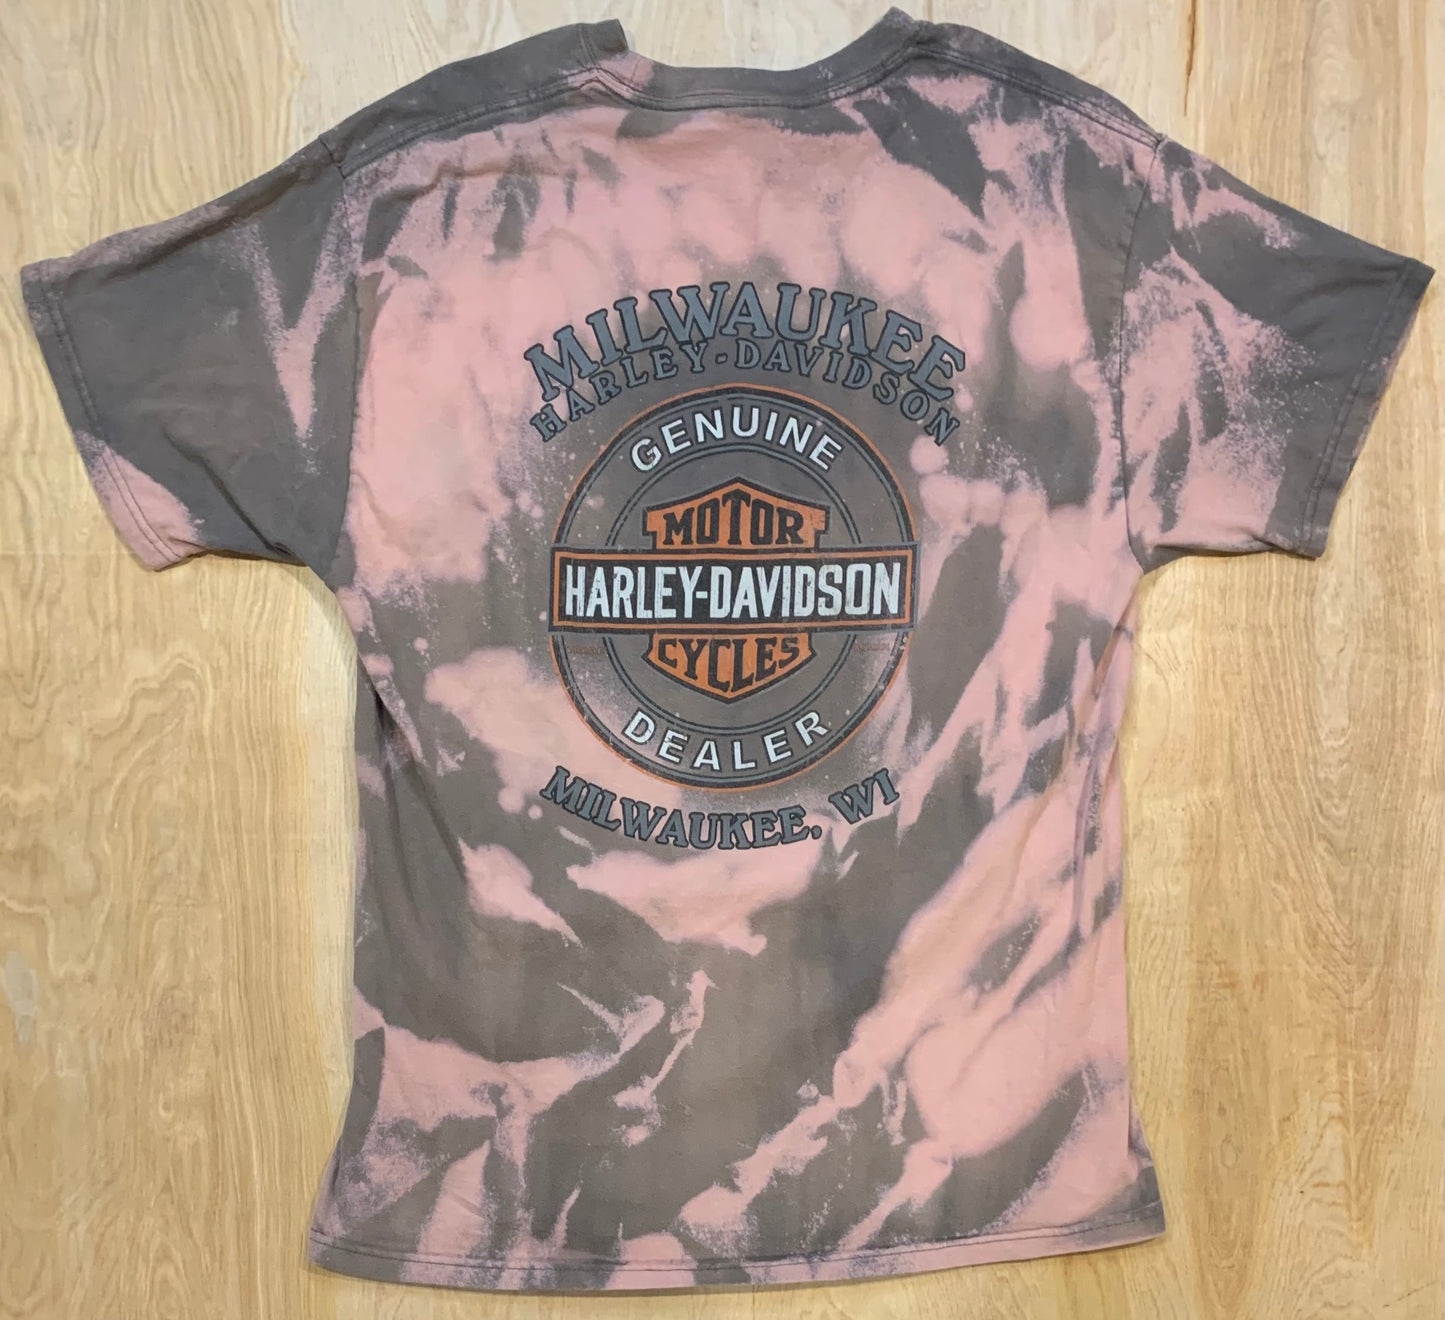 Classic Harley Davidson, Milwaukee Custom T-shirt